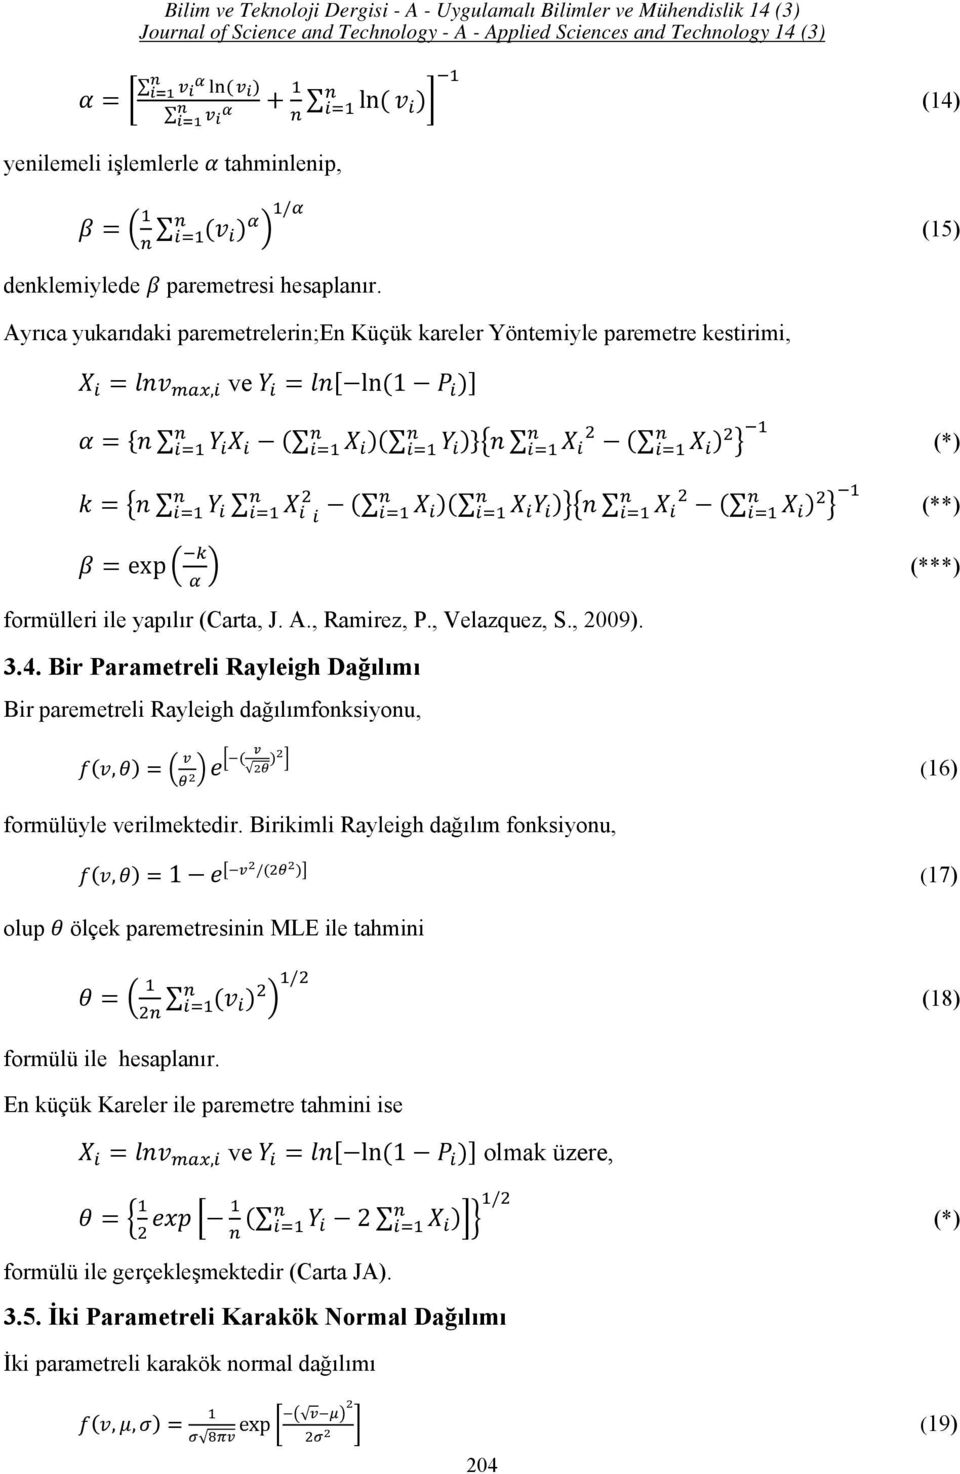 , 2009). 3.4. Bir Parametreli Rayleigh Dağılımı Bir paremetreli Rayleigh dağılımfonksiyonu,, (16) formülüyle verilmektedir.